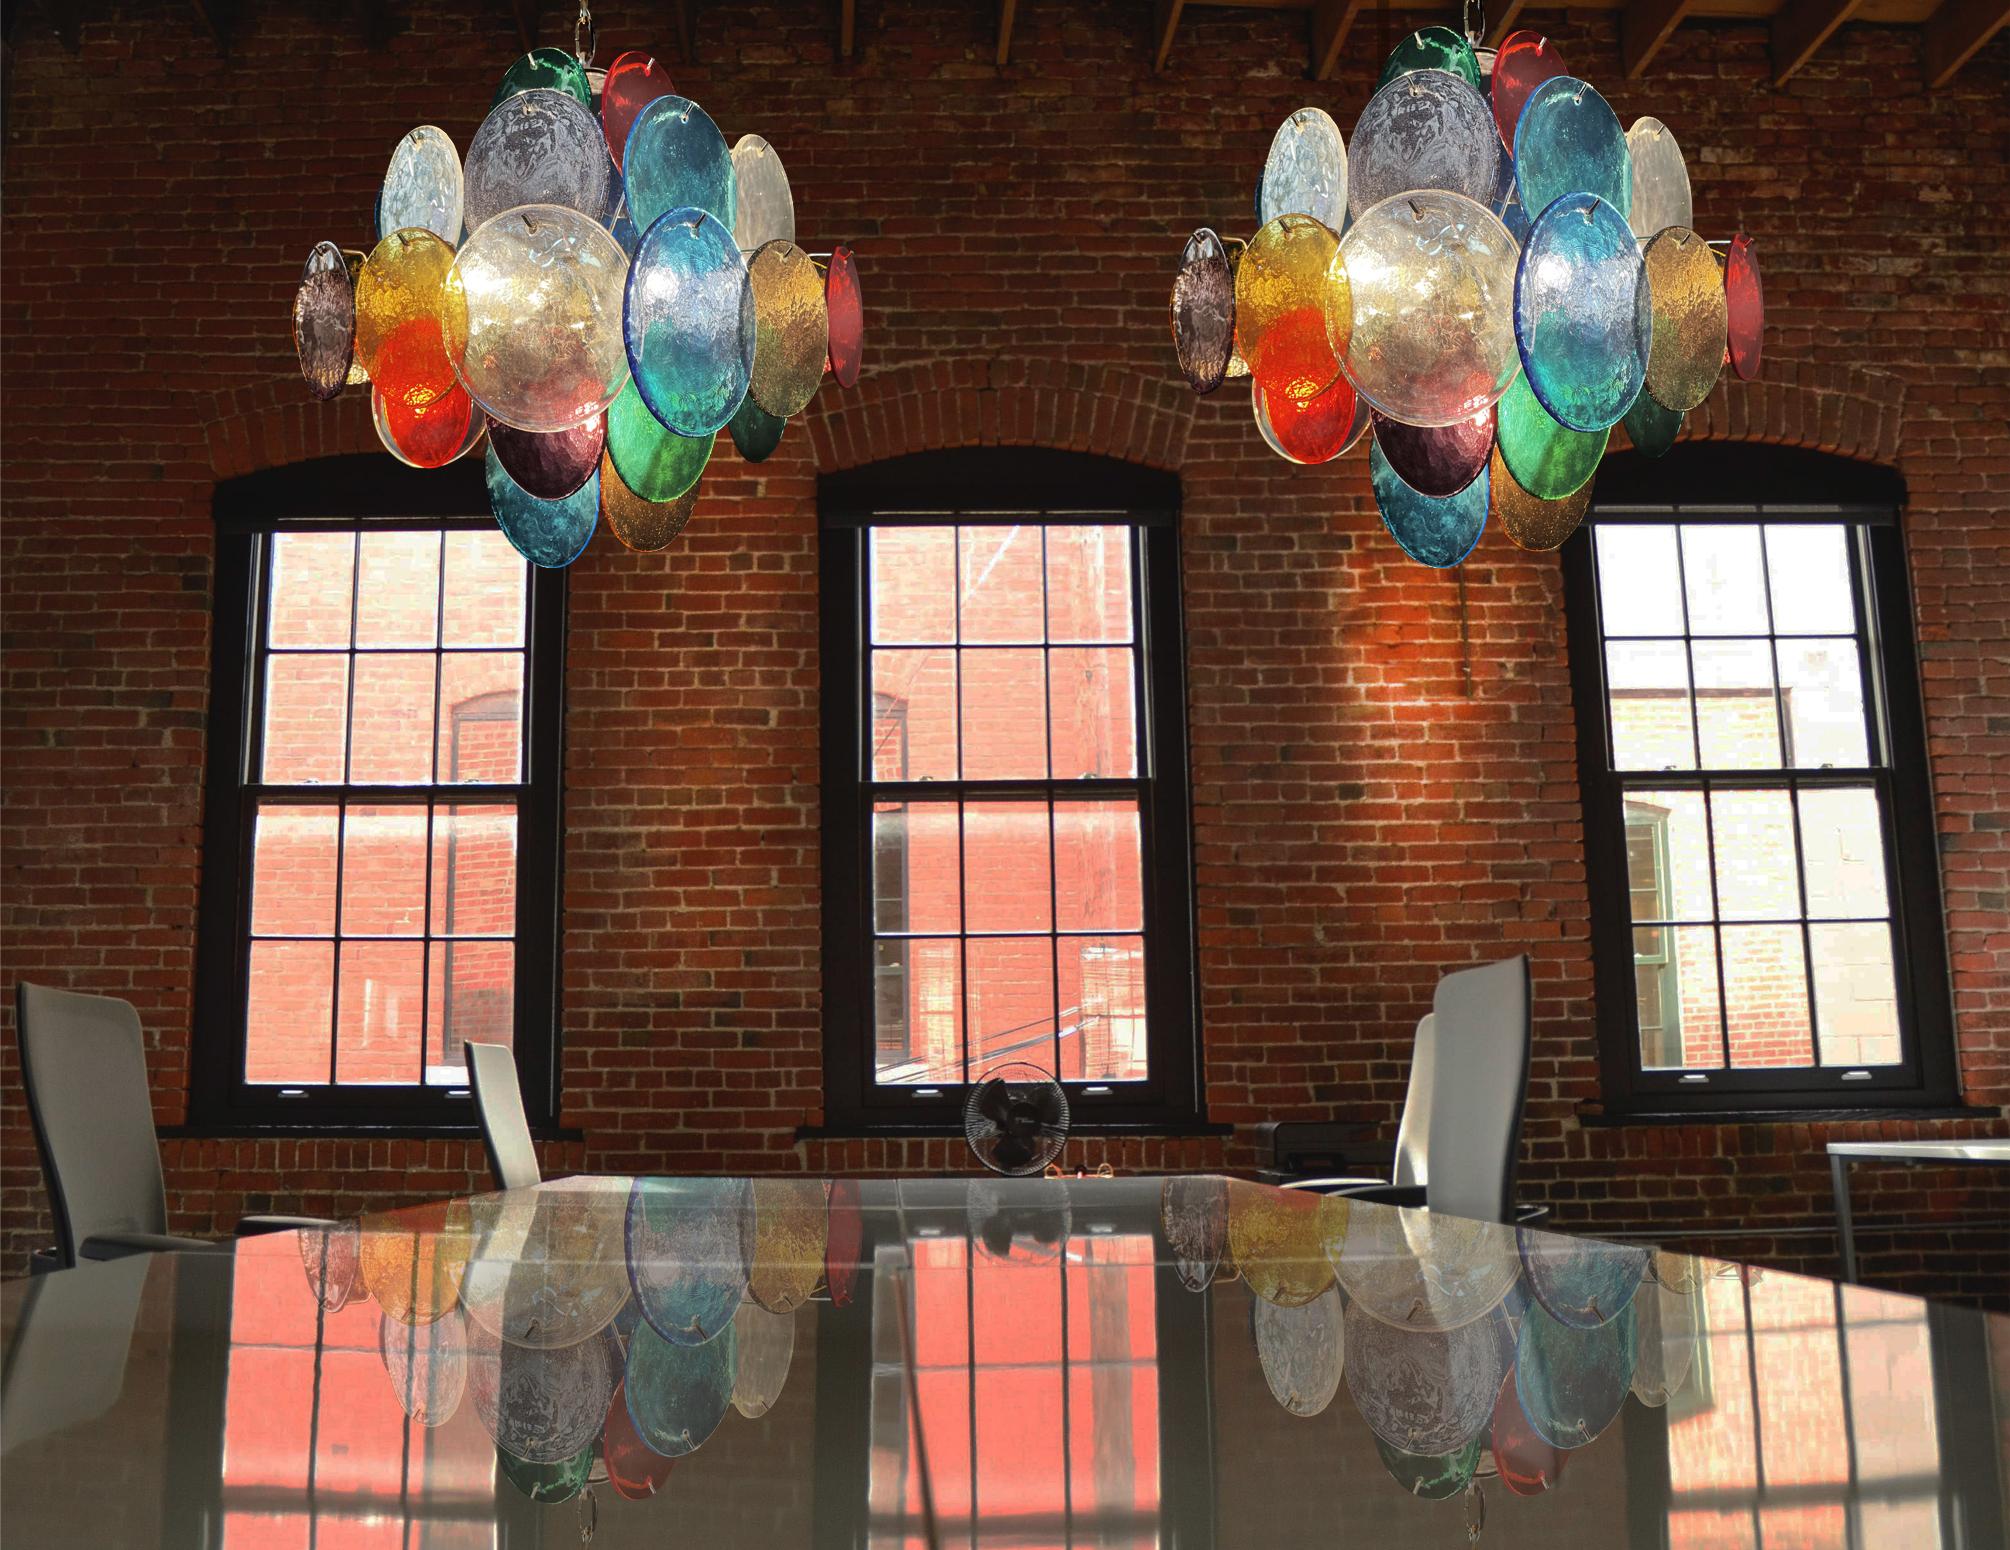 Trio de lustres italiens de Murano de style Vistosi. Chaque lustre comporte 36 fantastiques disques multicolores dans un cadre en métal nickelé.
Période : fin du XXe siècle
Dimensions : 150 cm de hauteur avec chaîne ; 50 cm de hauteur sans chaîne